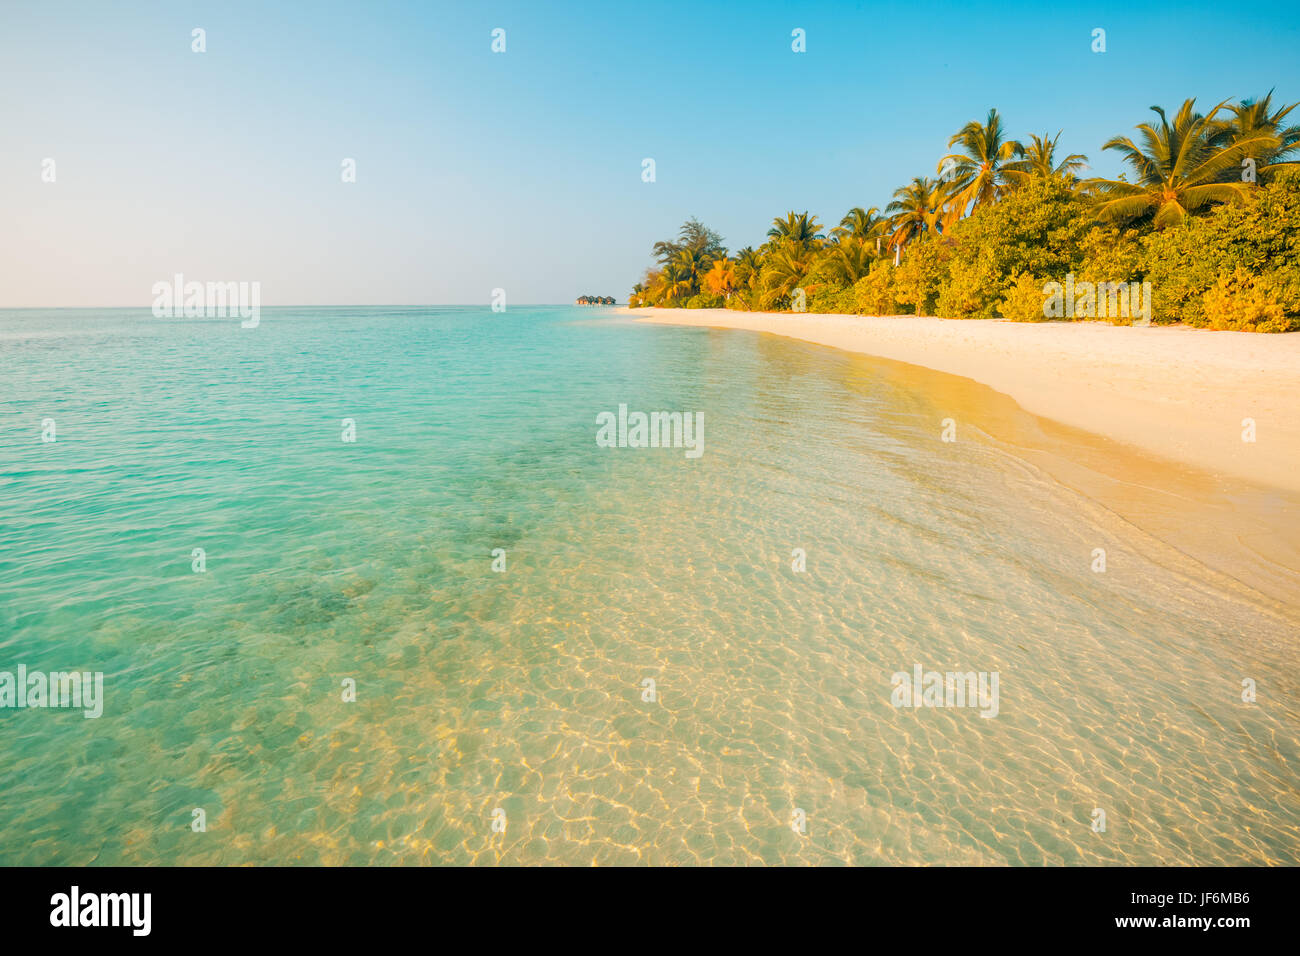 Perfekte Strand sehen. Sommerurlaub und Urlaub Design. Inspirational tropischen Strand, Palmen und weißem Sand. Ruhige Landschaft, entspannenden Strand Stockfoto